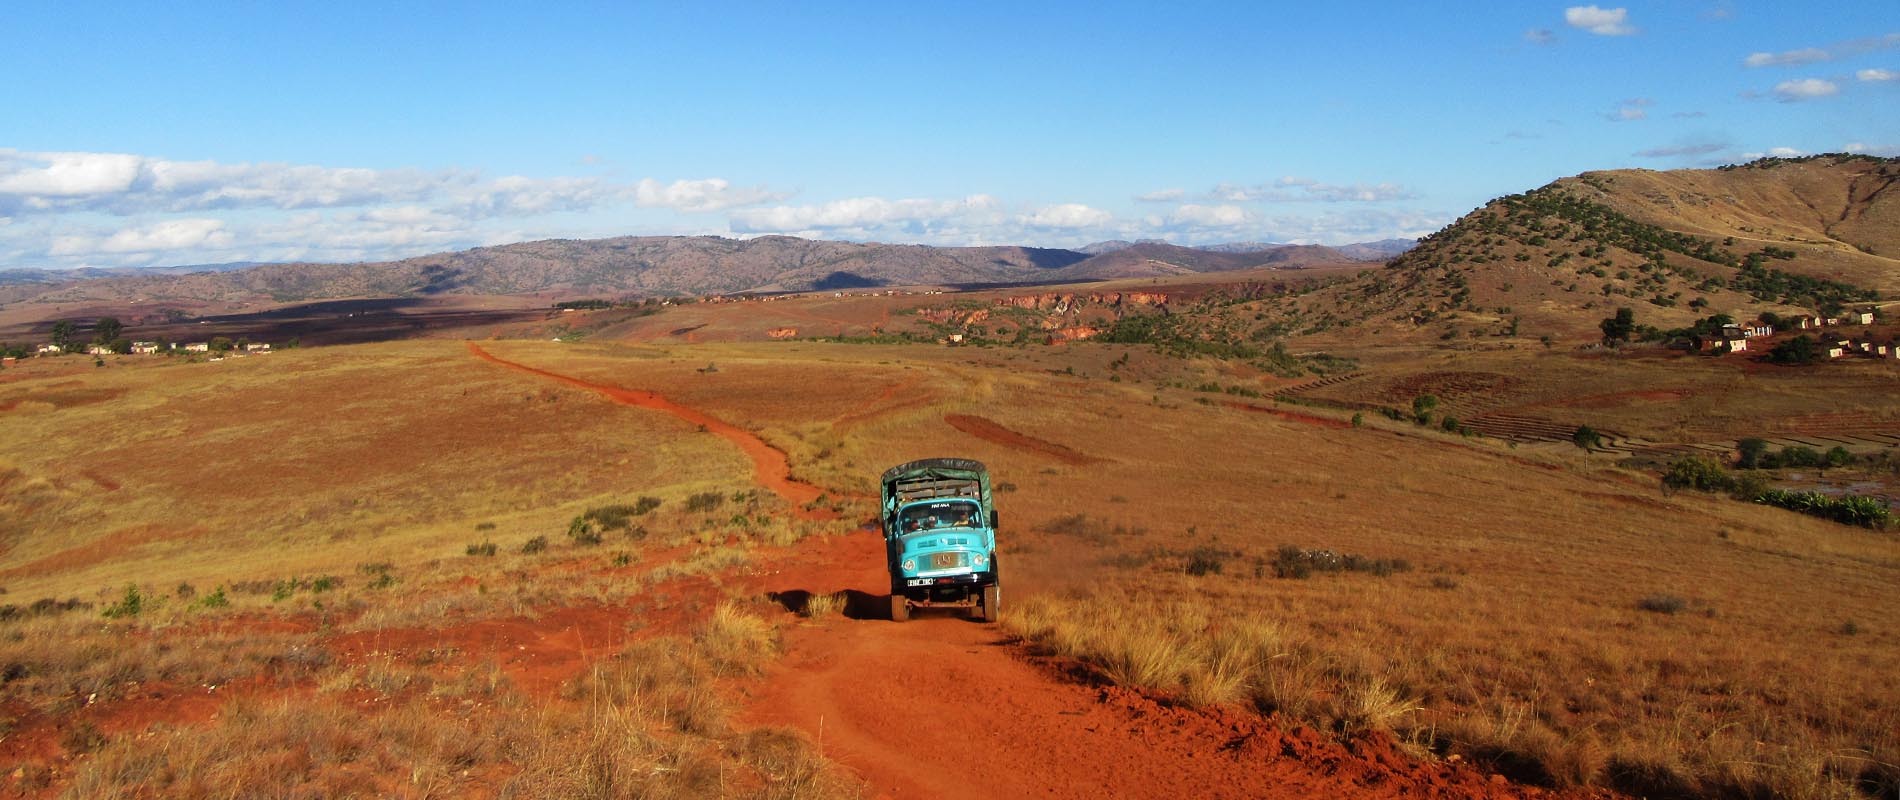 Amazonite Mine Road Norcross Madagascar